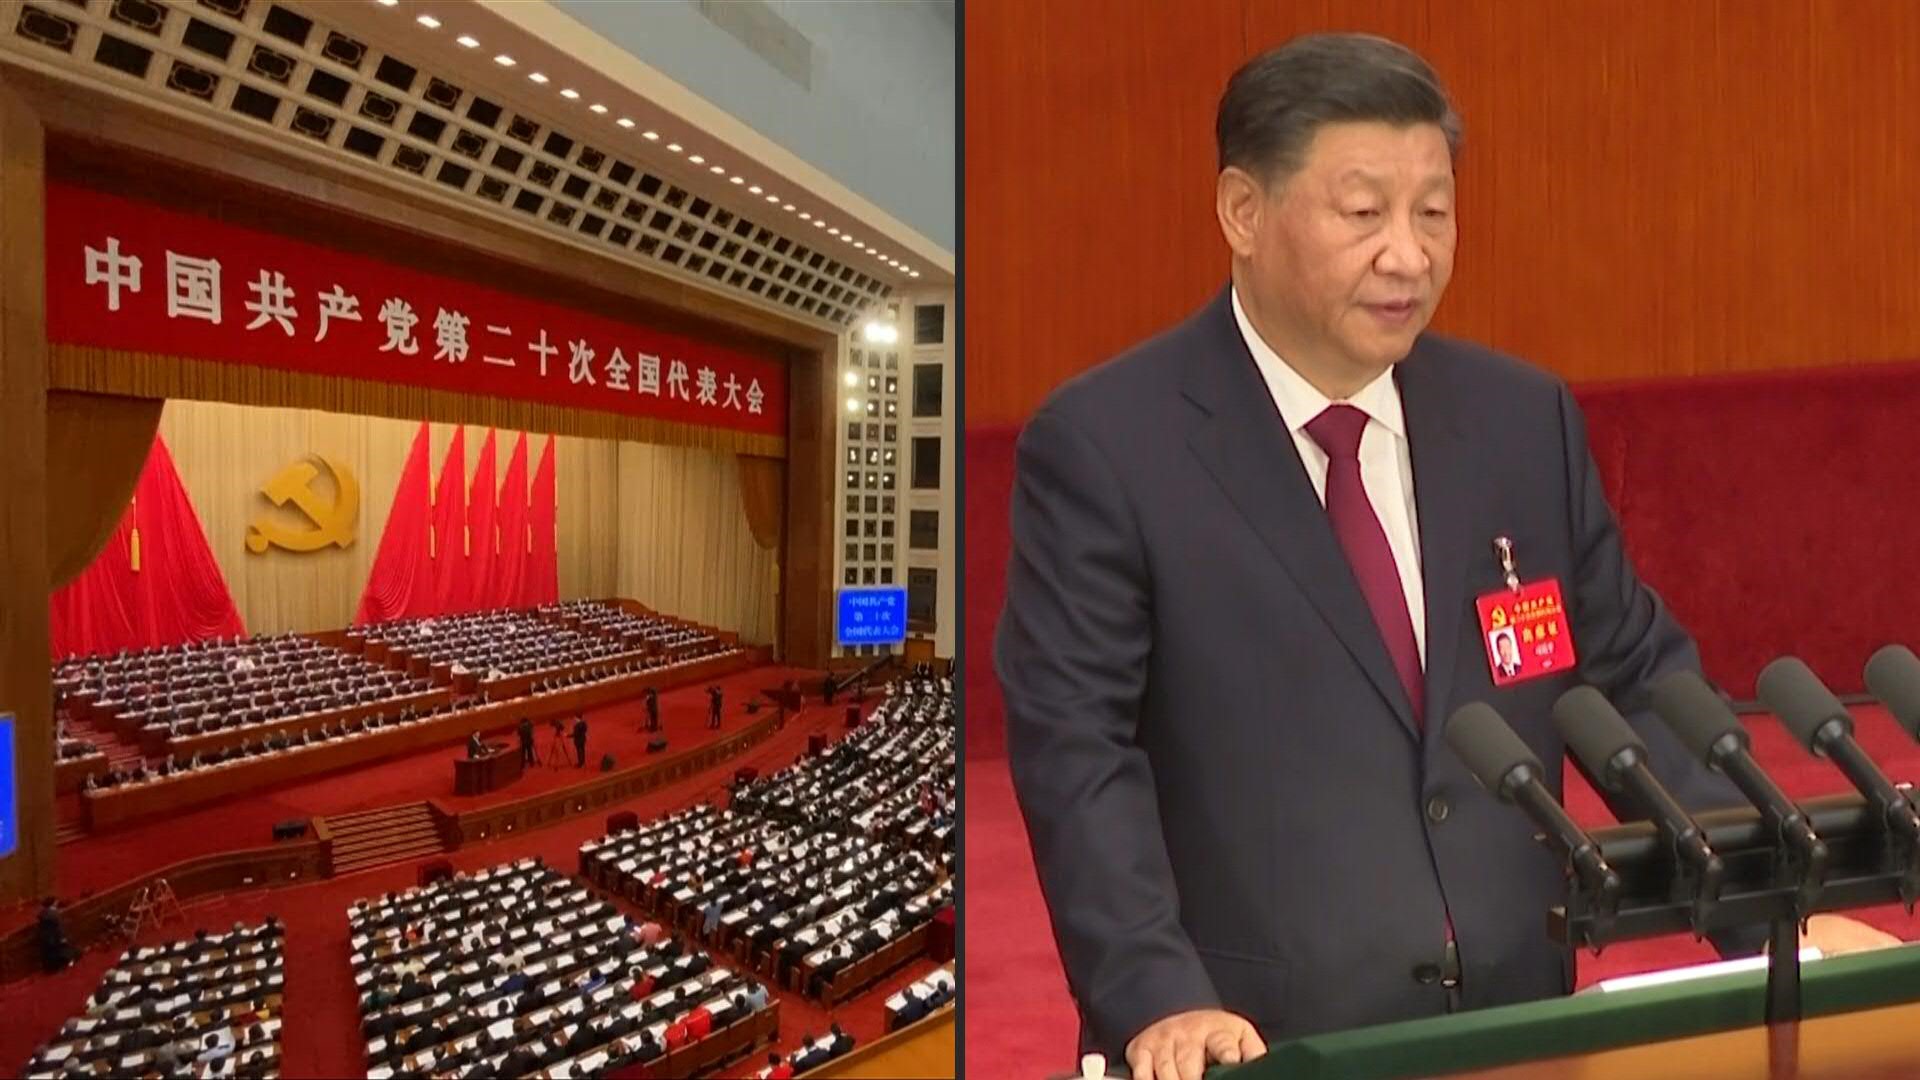 El presidente chino, Xi Jinping, pidió "unidad" y defendió su política de lucha contra el covid-19 y la corrupción, en la inauguración el domingo del 20º Congreso del Partido Comunista de China (PCC), en el que debe recibir un histórico tercer mandato en el poder.